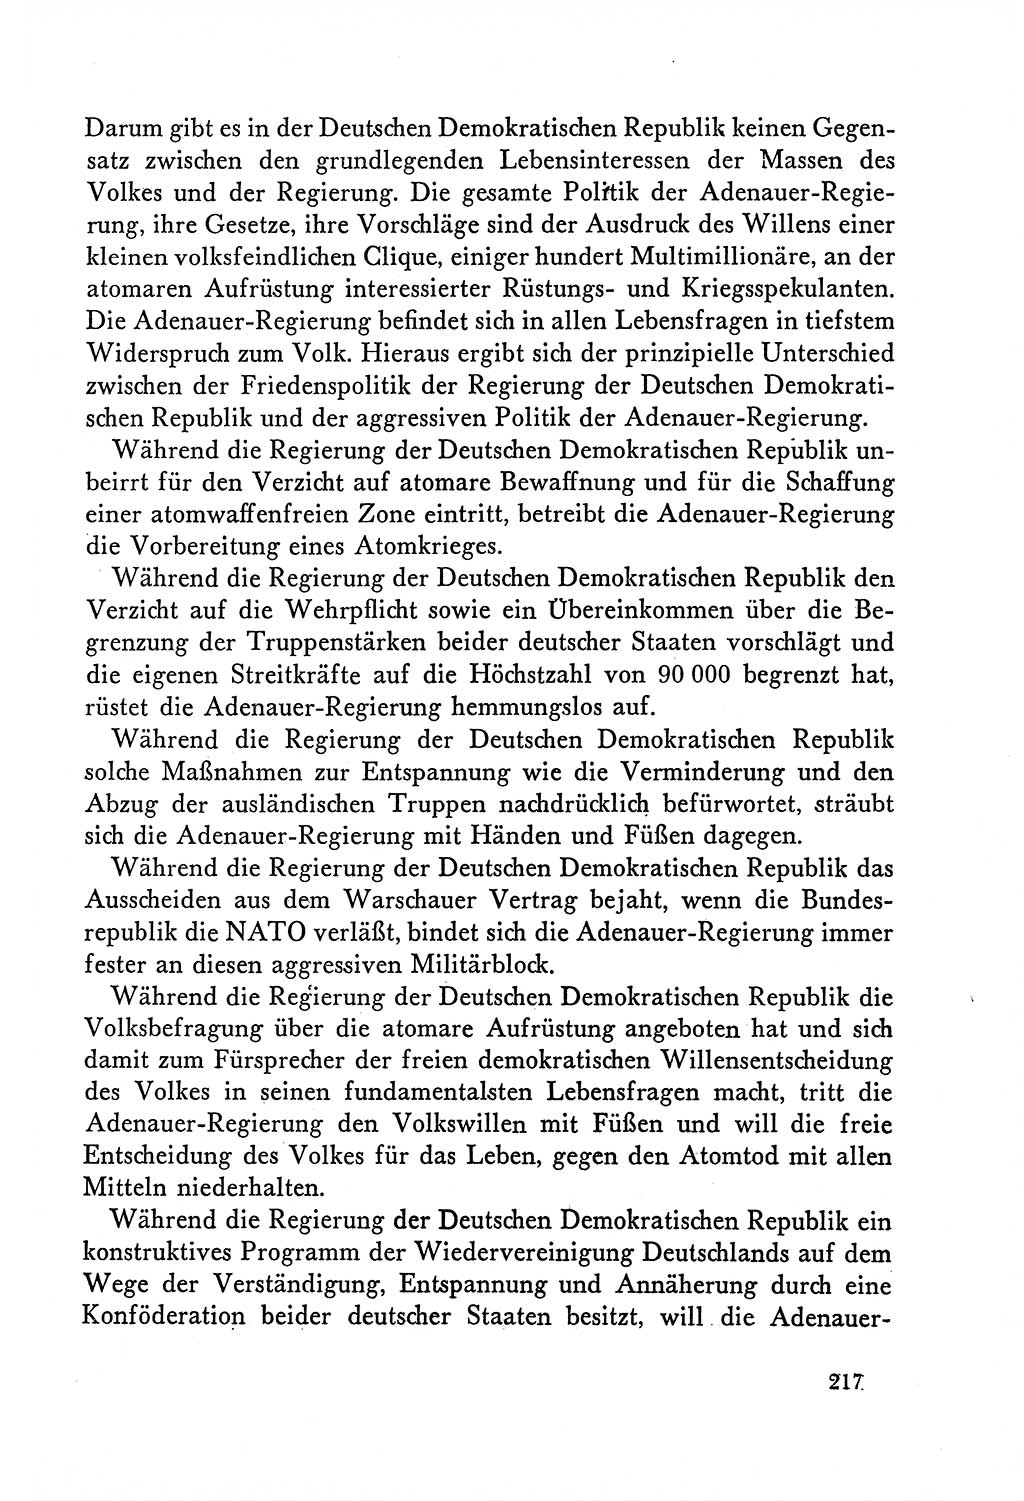 Dokumente der Sozialistischen Einheitspartei Deutschlands (SED) [Deutsche Demokratische Republik (DDR)] 1958-1959, Seite 217 (Dok. SED DDR 1958-1959, S. 217)